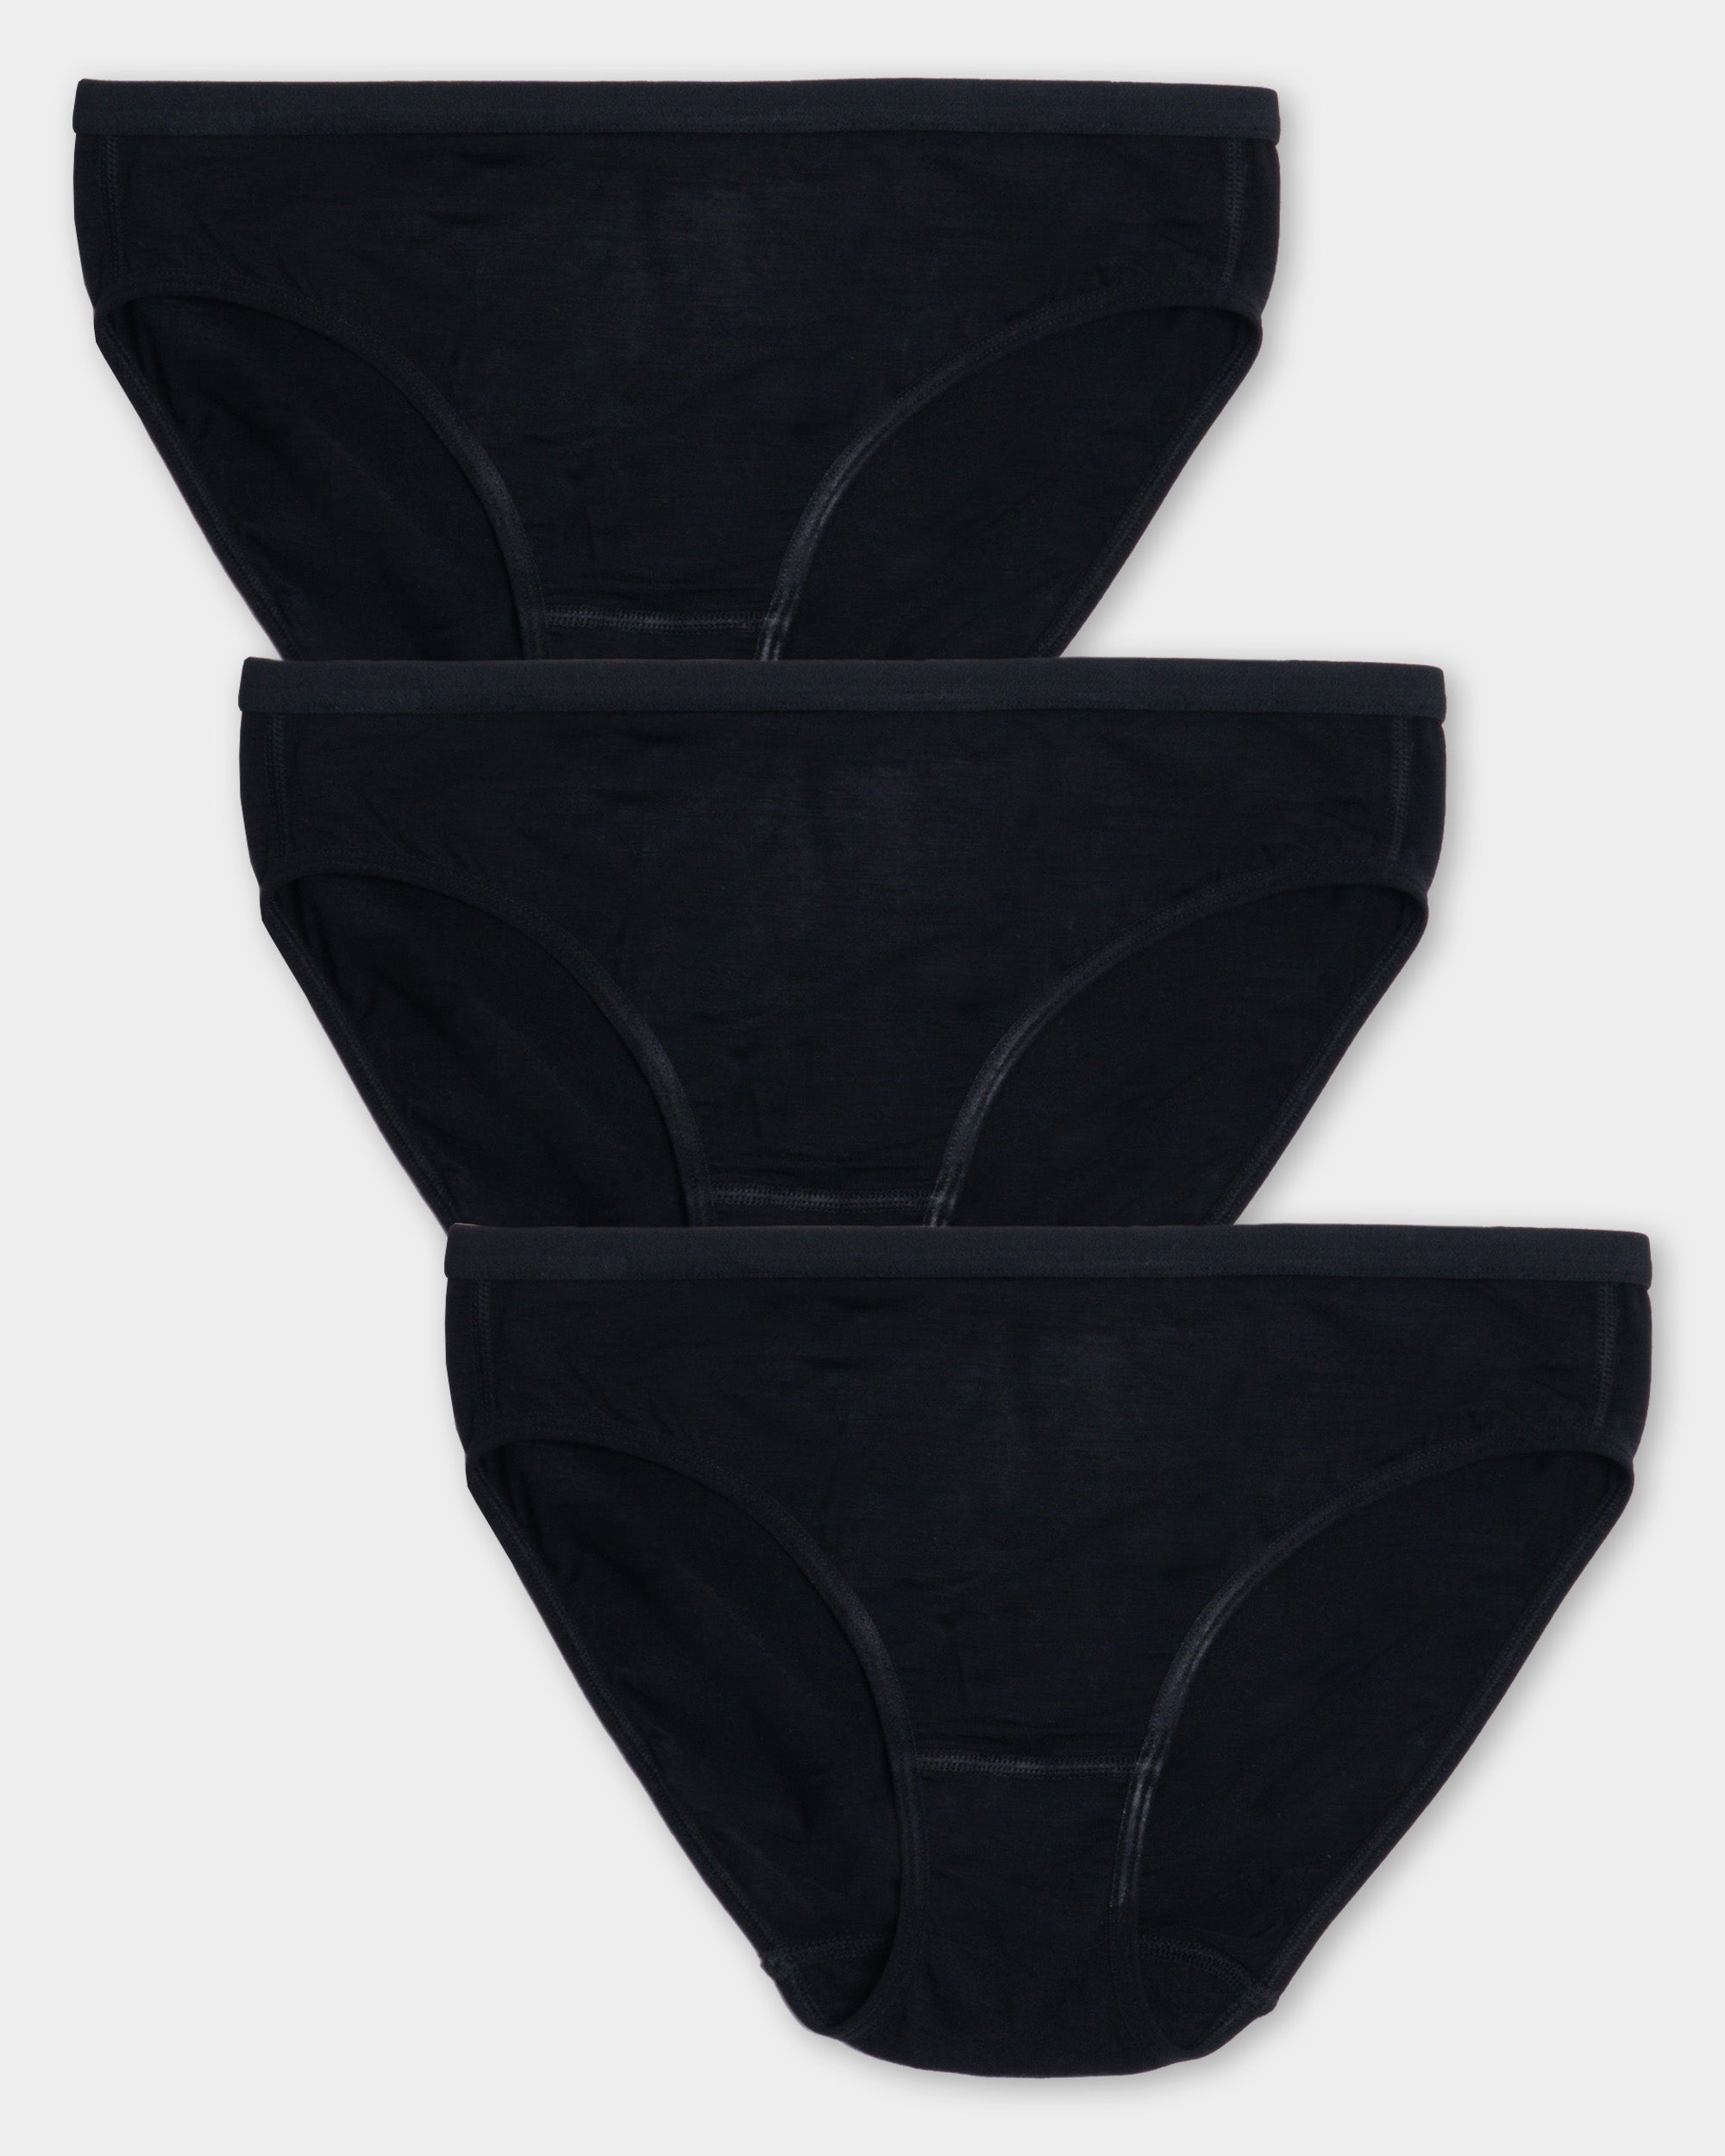 Pack Of 2 Women's Black Brief Cotton UnderWear (Black)